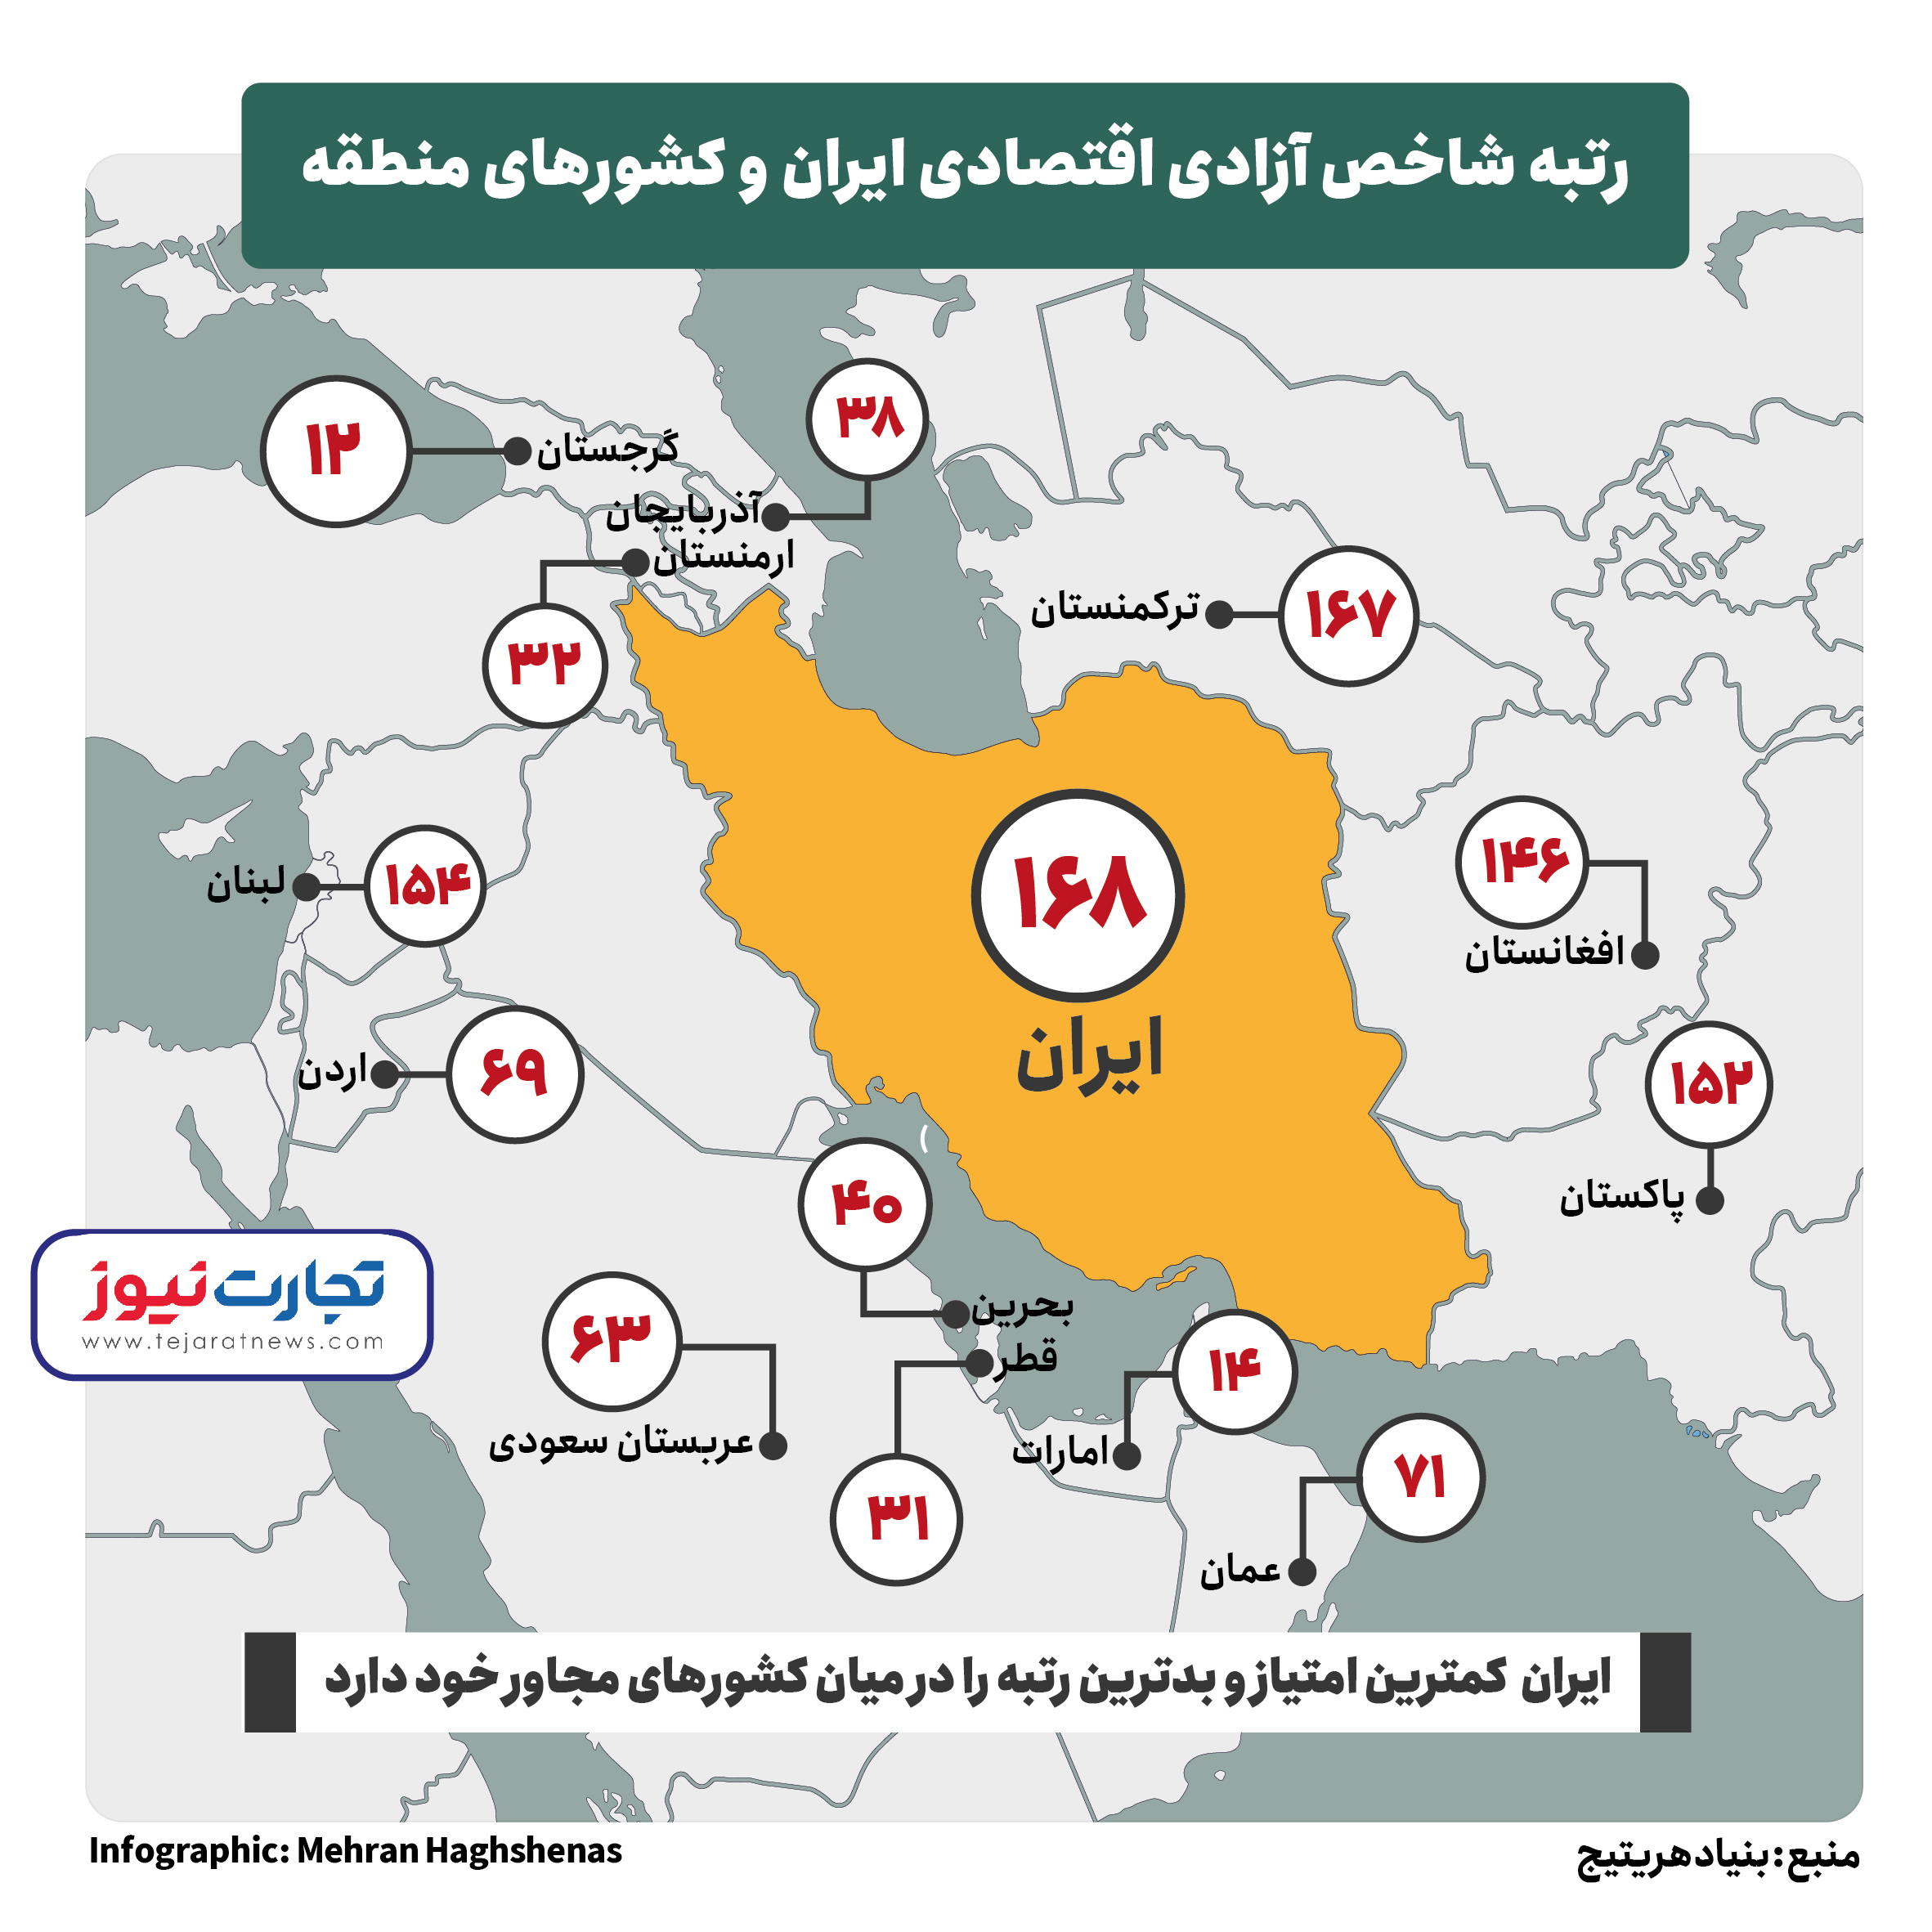 سقوط آزادی اقتصادی در ایران | افغانستان و ترکمنستان بالاتر از ایران